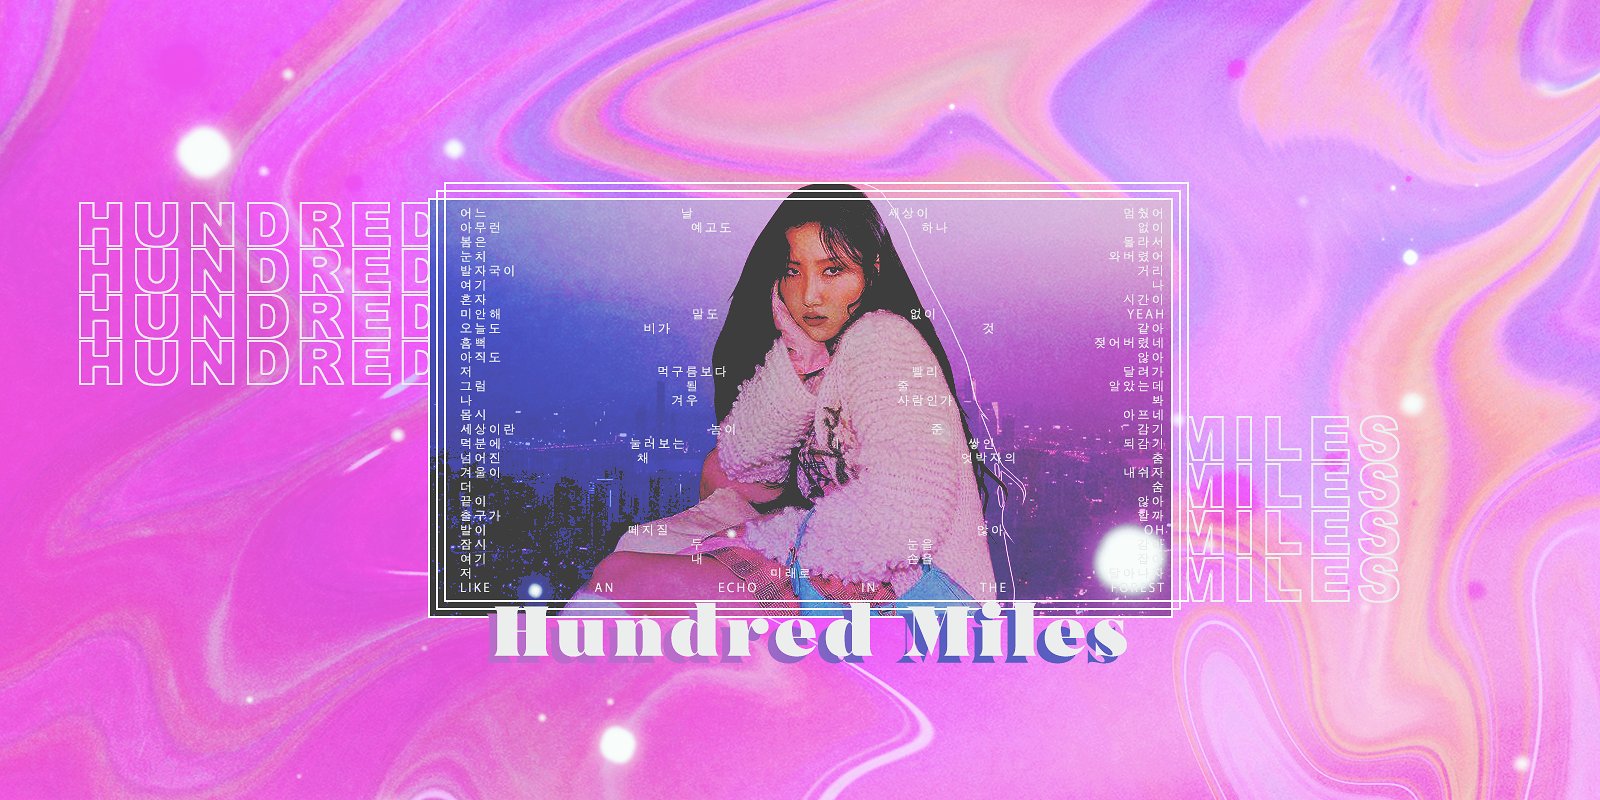 hundred miles